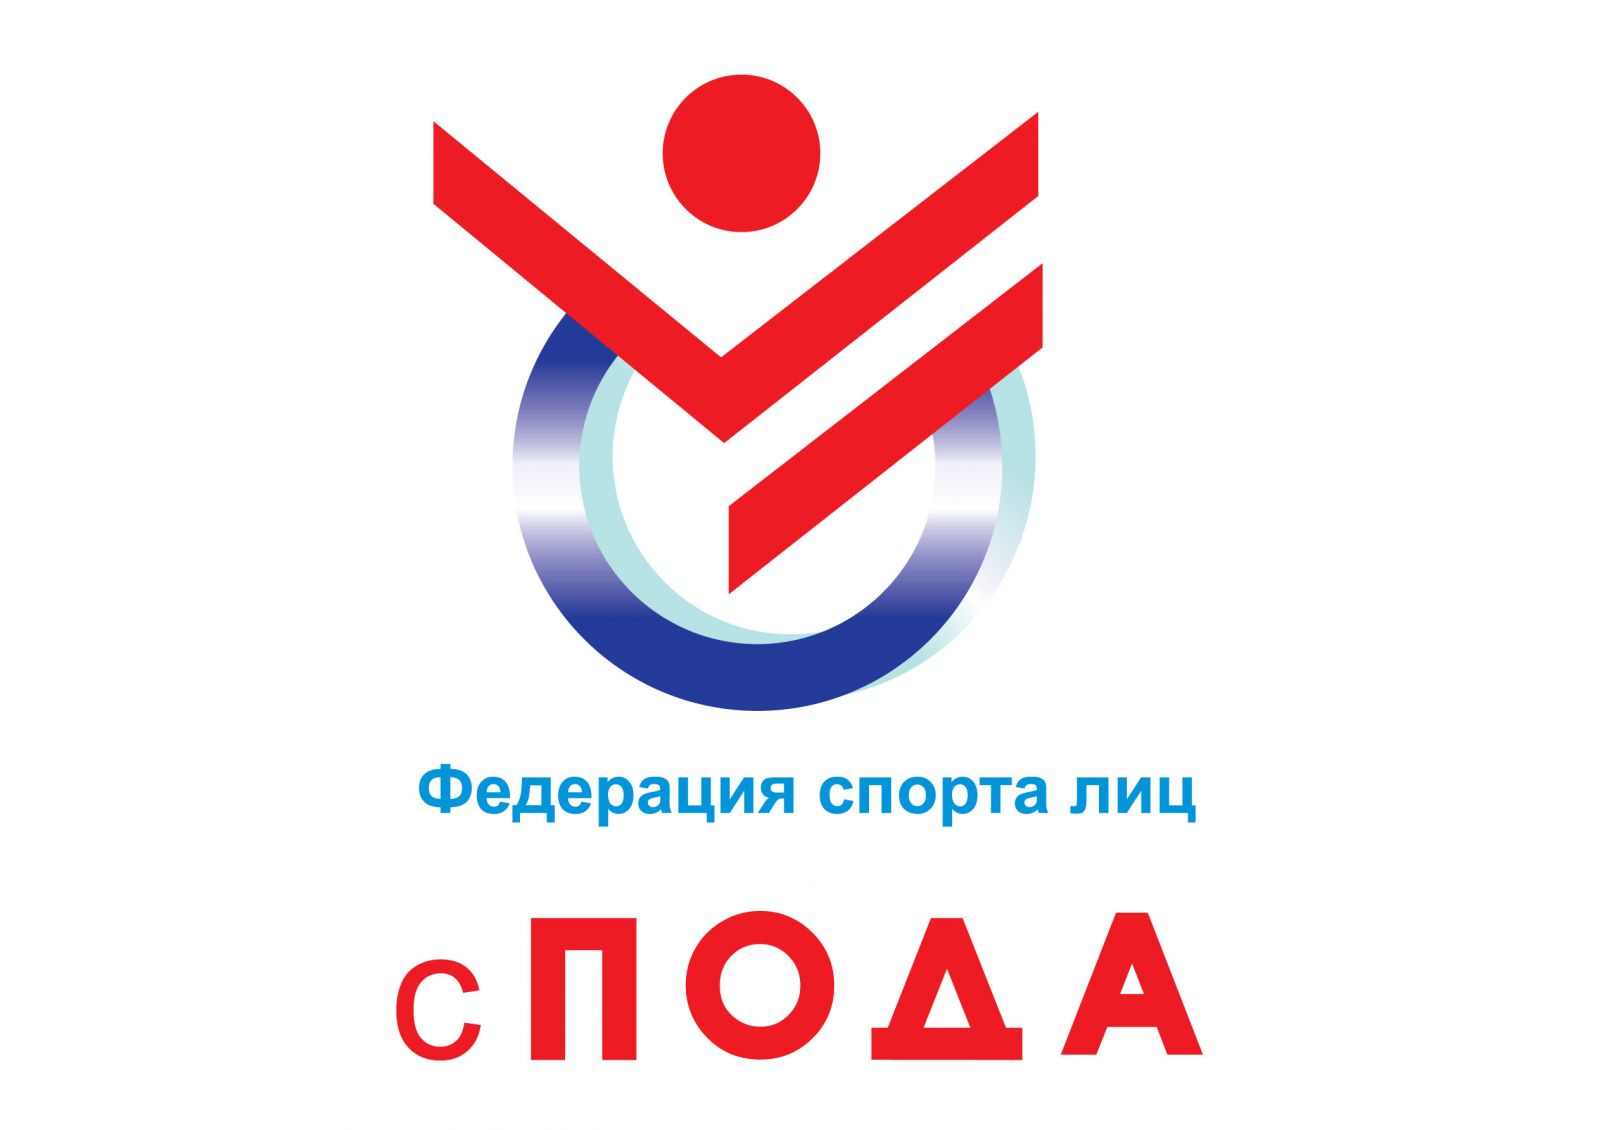 ПКР поздравляет Всероссийскую федерацию спорта лиц с ПОДА с прохождением государственной аккредитации в качестве спортивной федерации